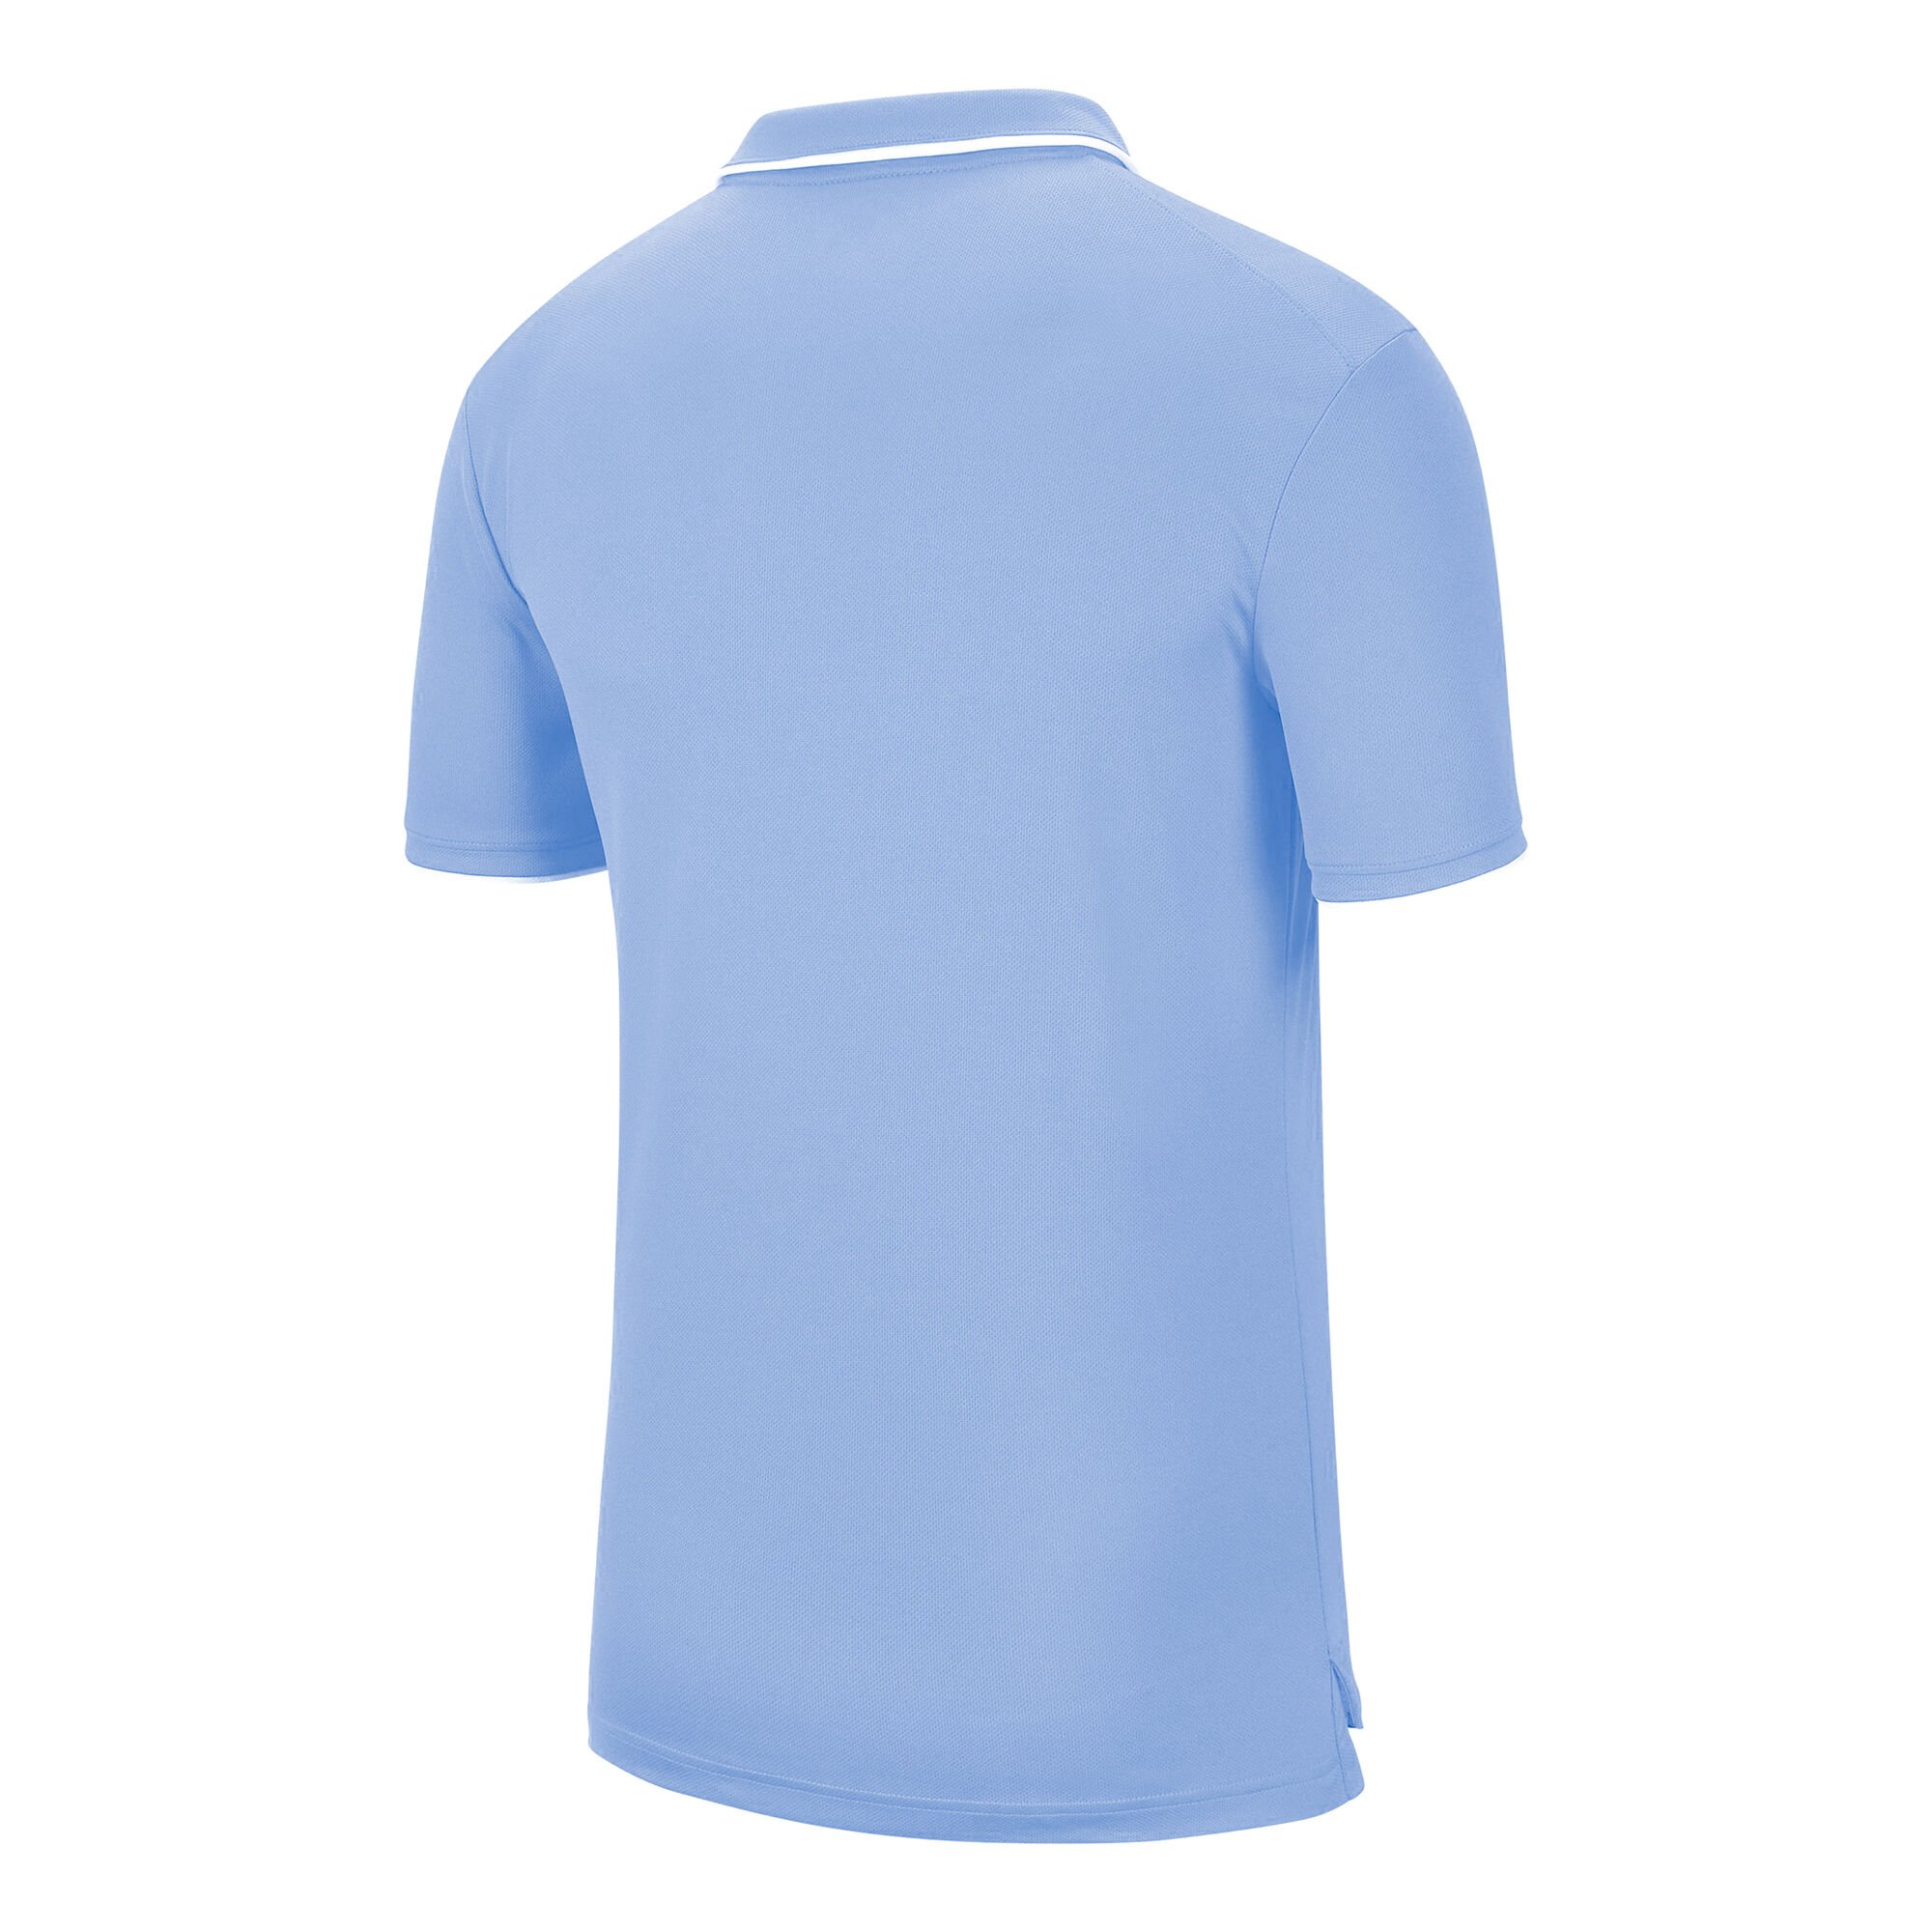 Buy Nike Court Dry Polo Men Light Blue, White online | Tennis Point UK